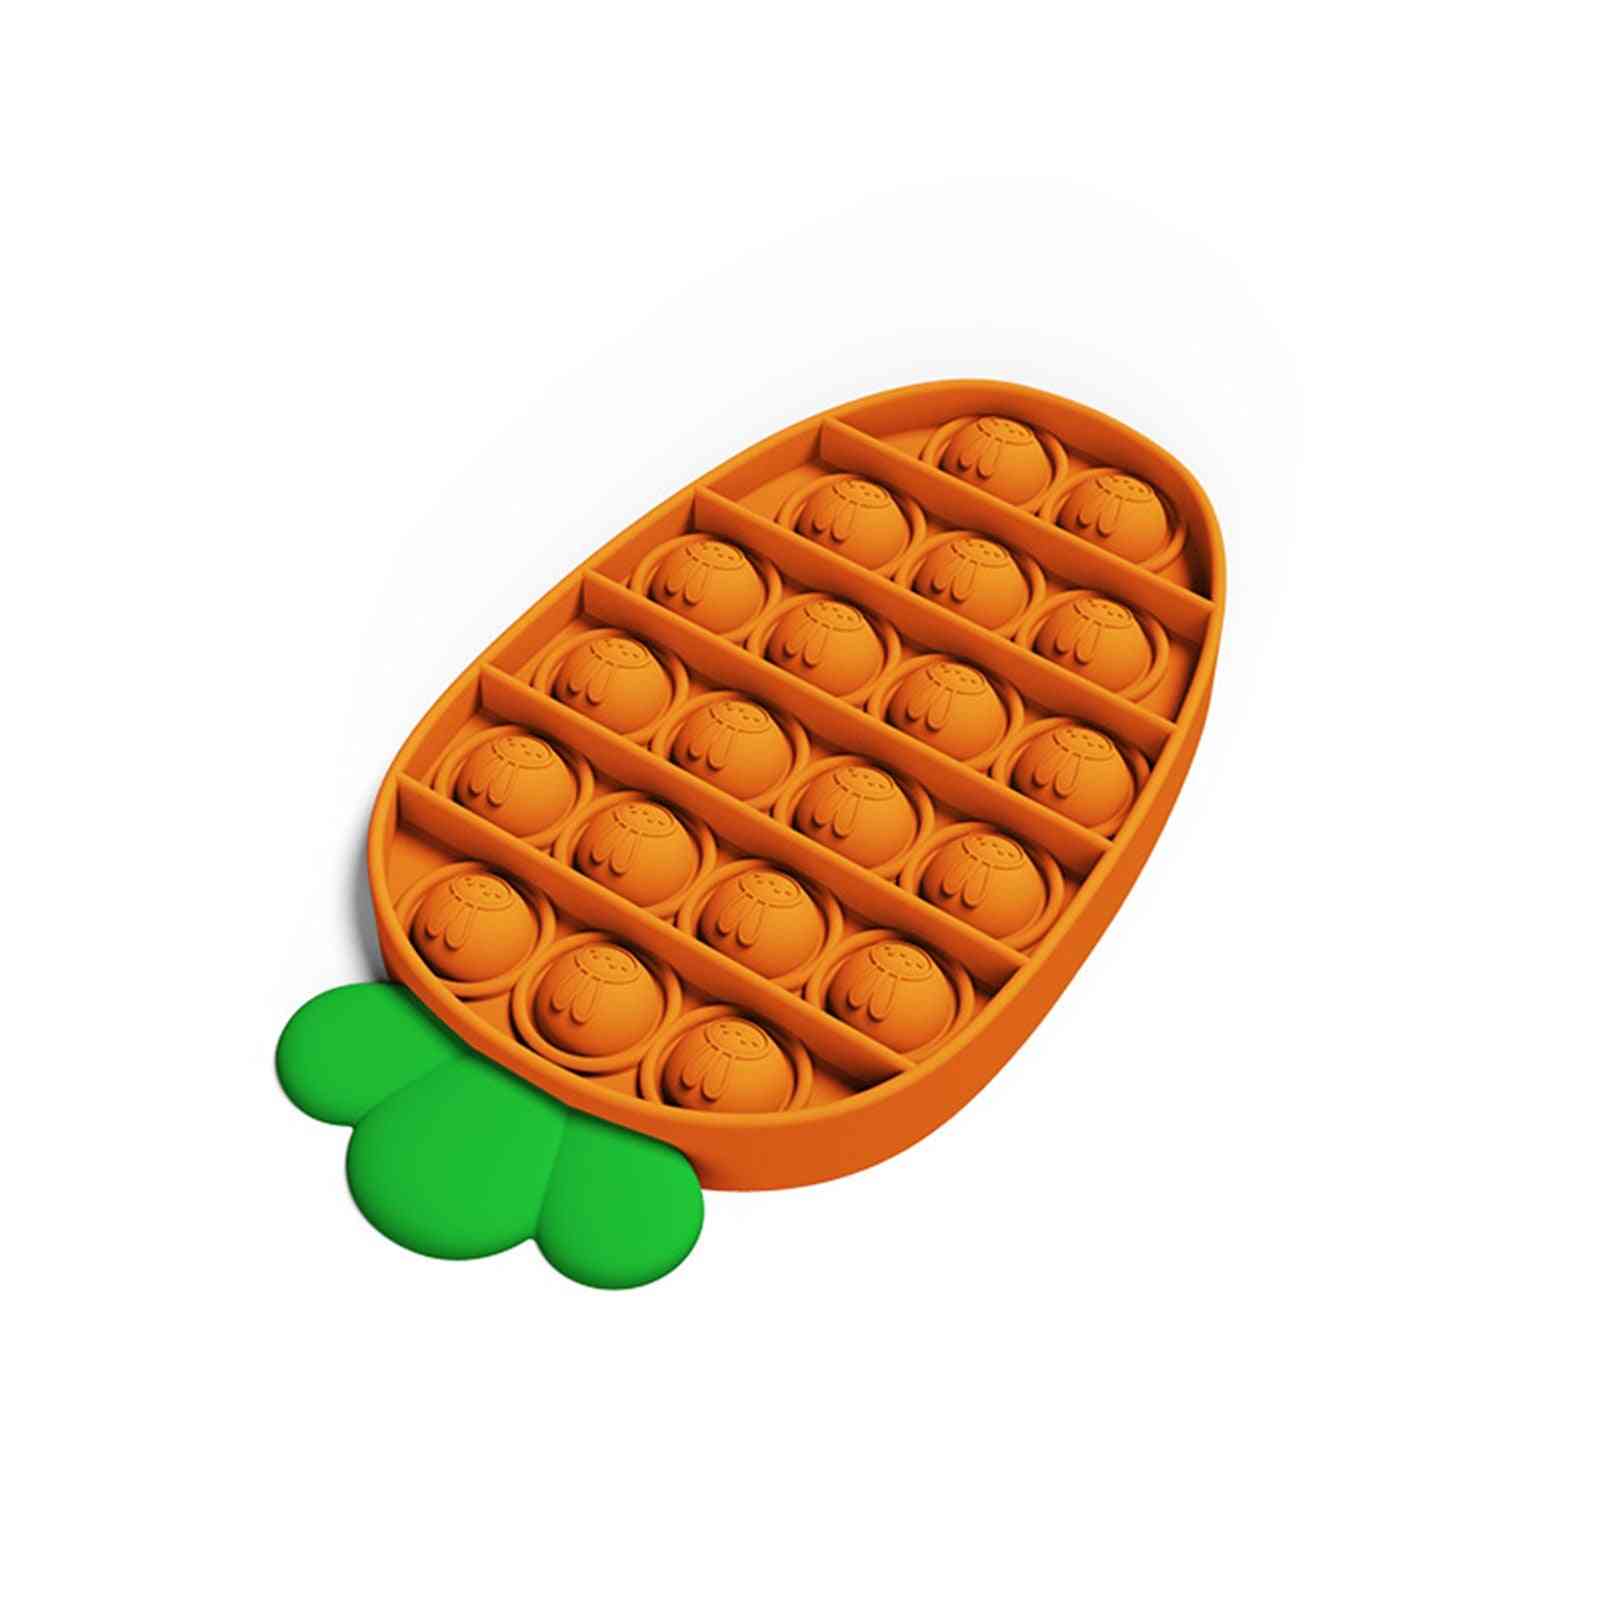 1 stk.- gulerodskubbel, fidget sensorisk legetøj til autisme